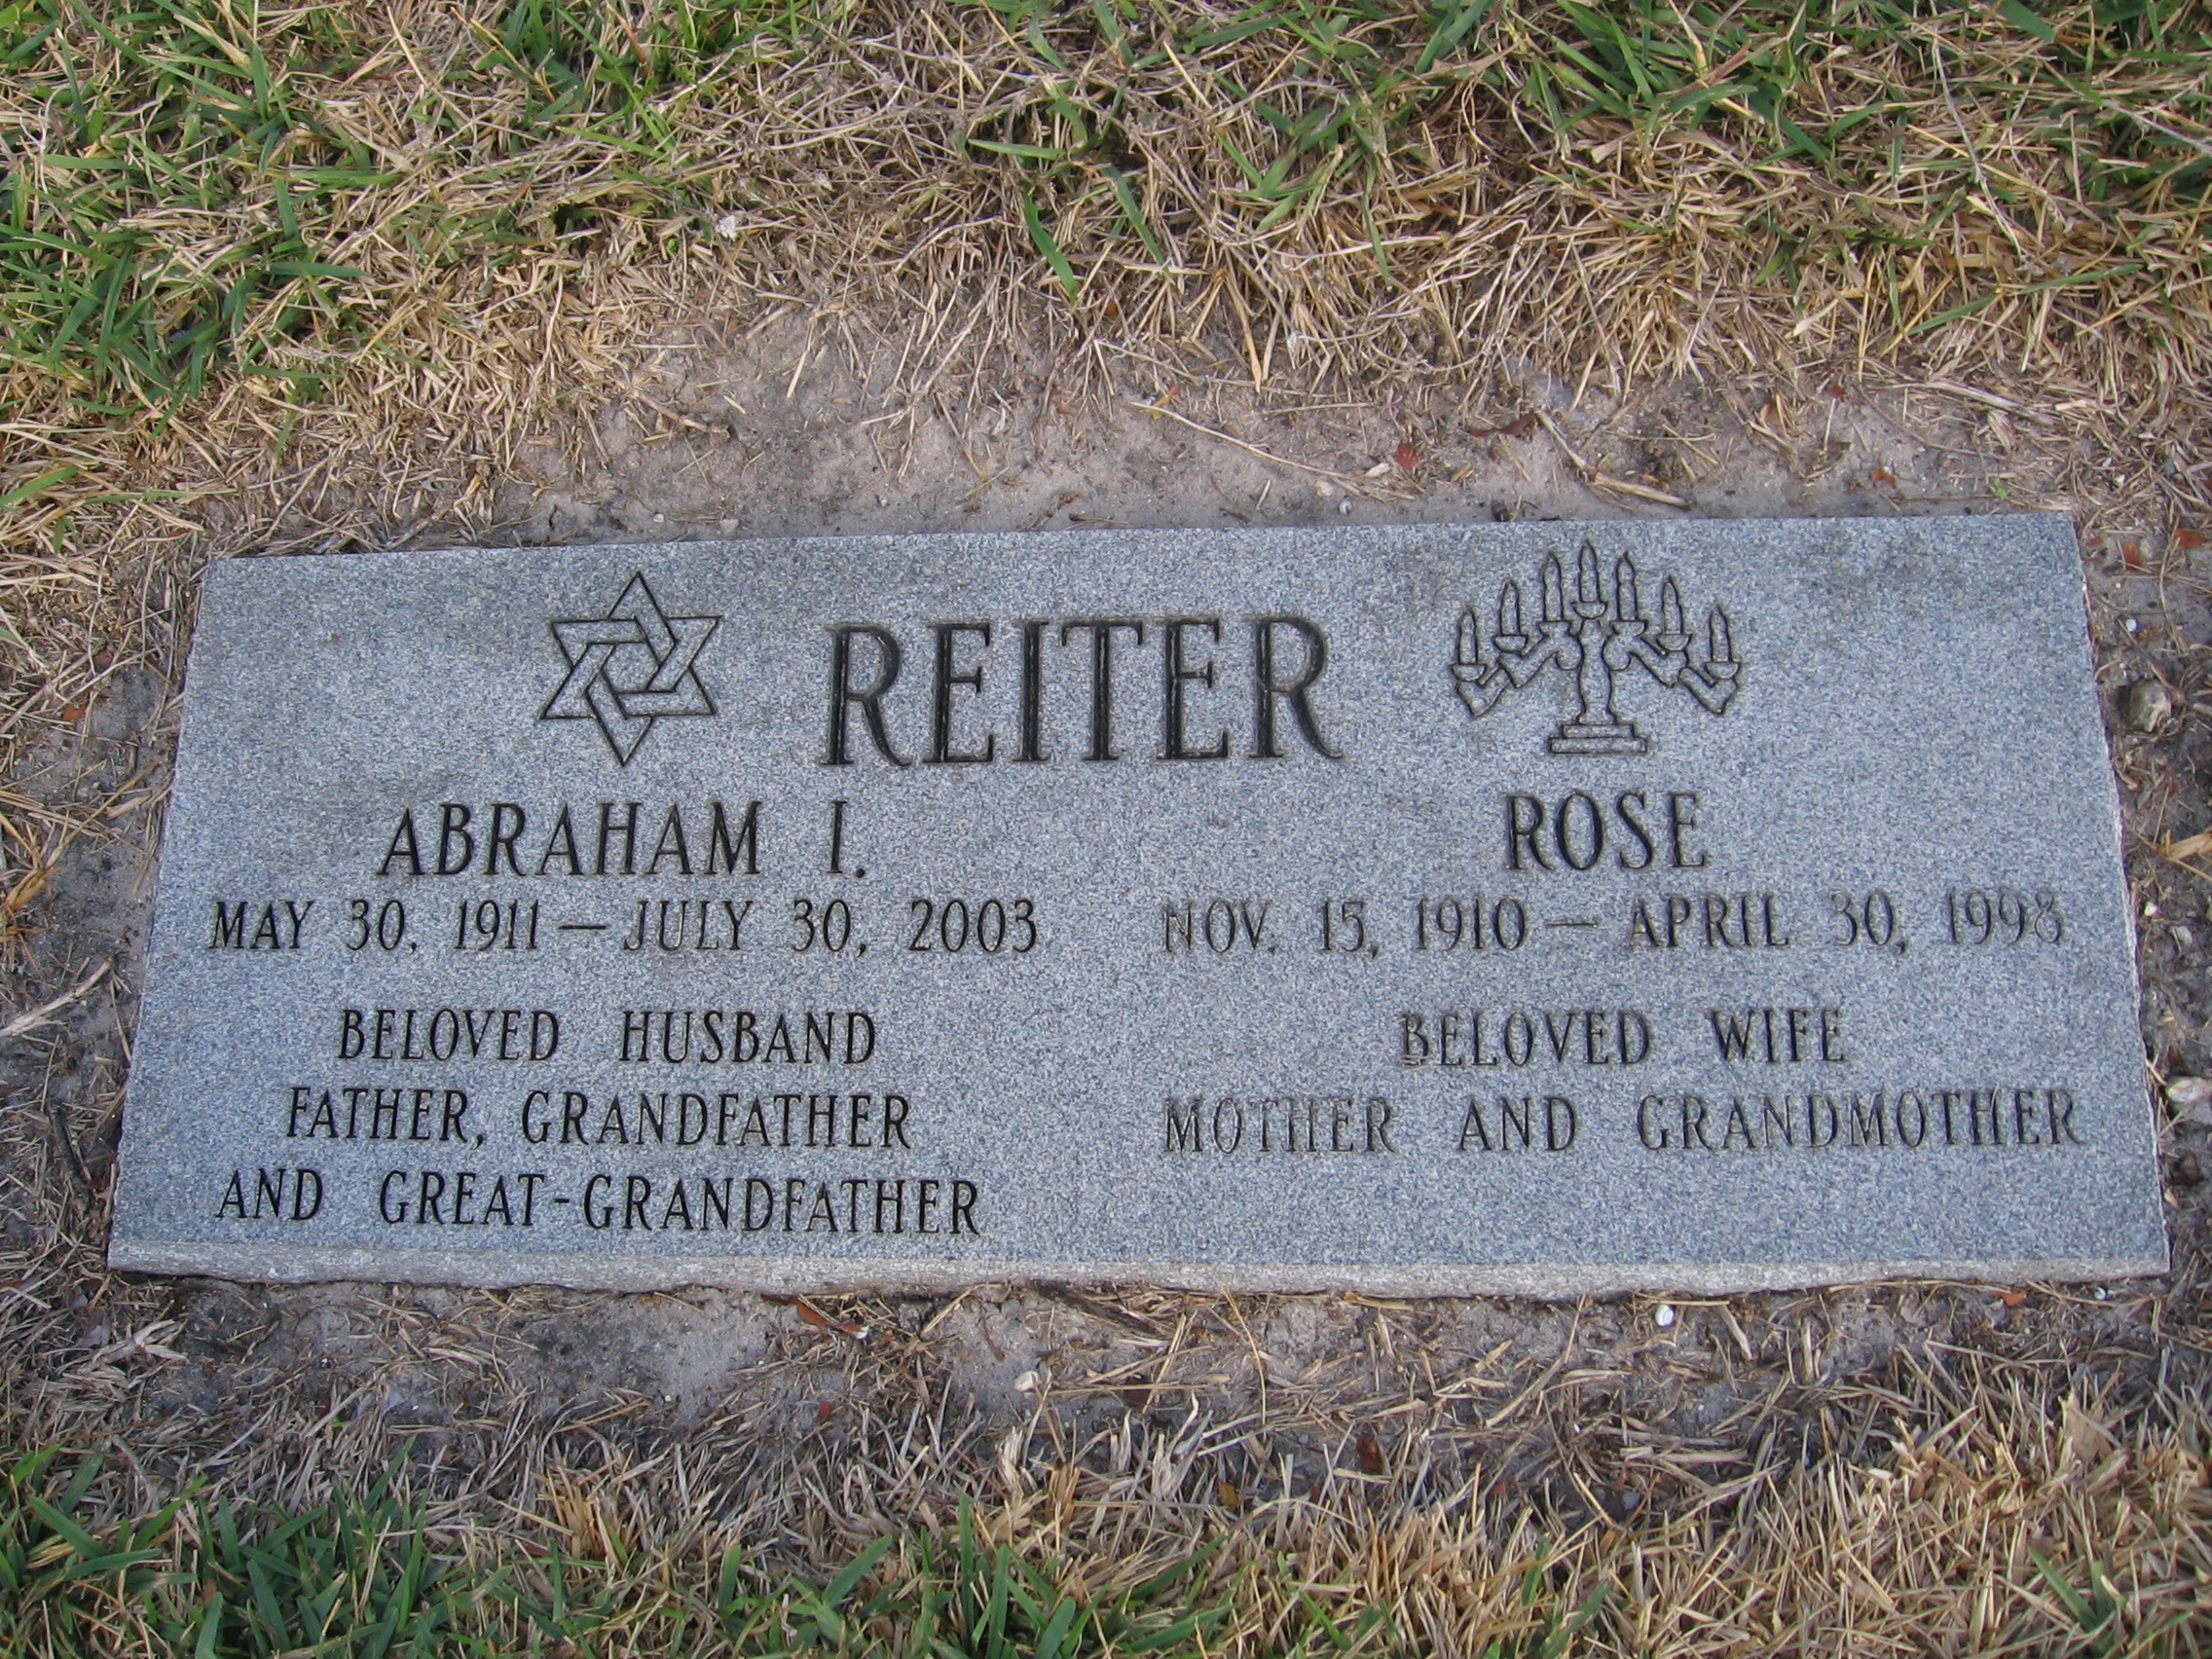 Rose Reiter